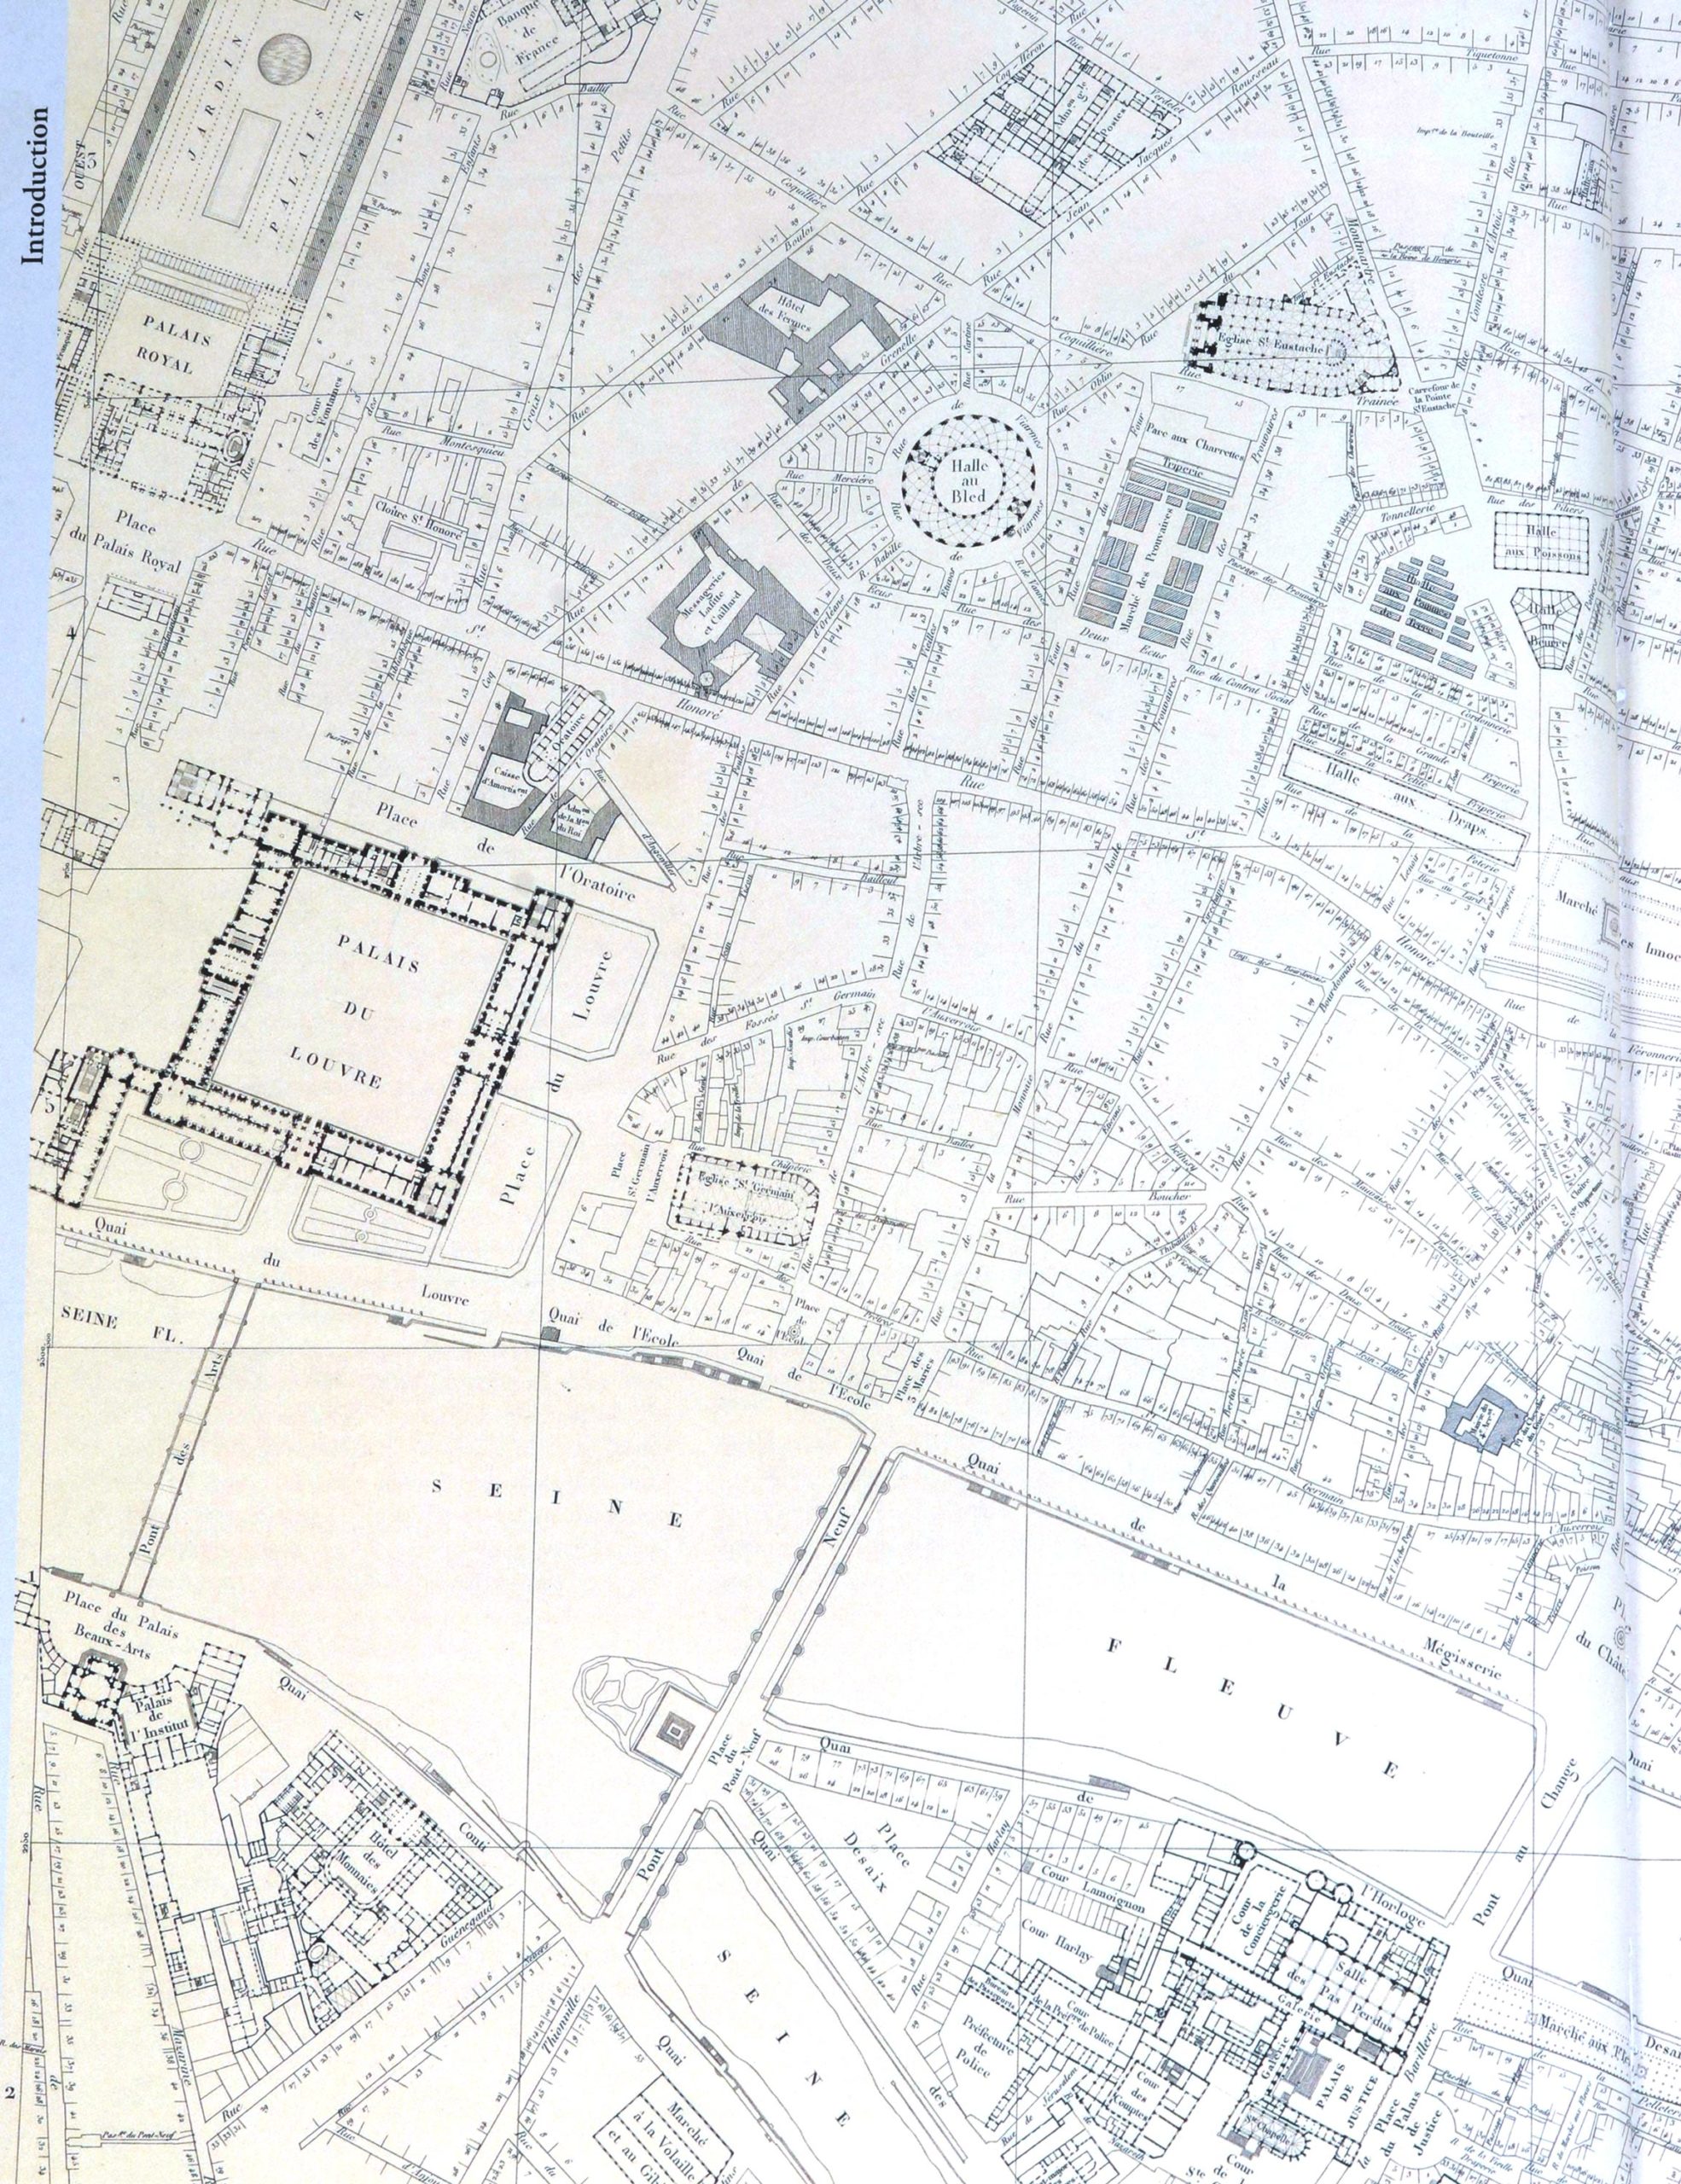 Extrait du plan de Jacoubet, 1836, sur lequel on reconnaît la plupart des rues qui feront l'objet des relevés de Davioud, crédits BHVP